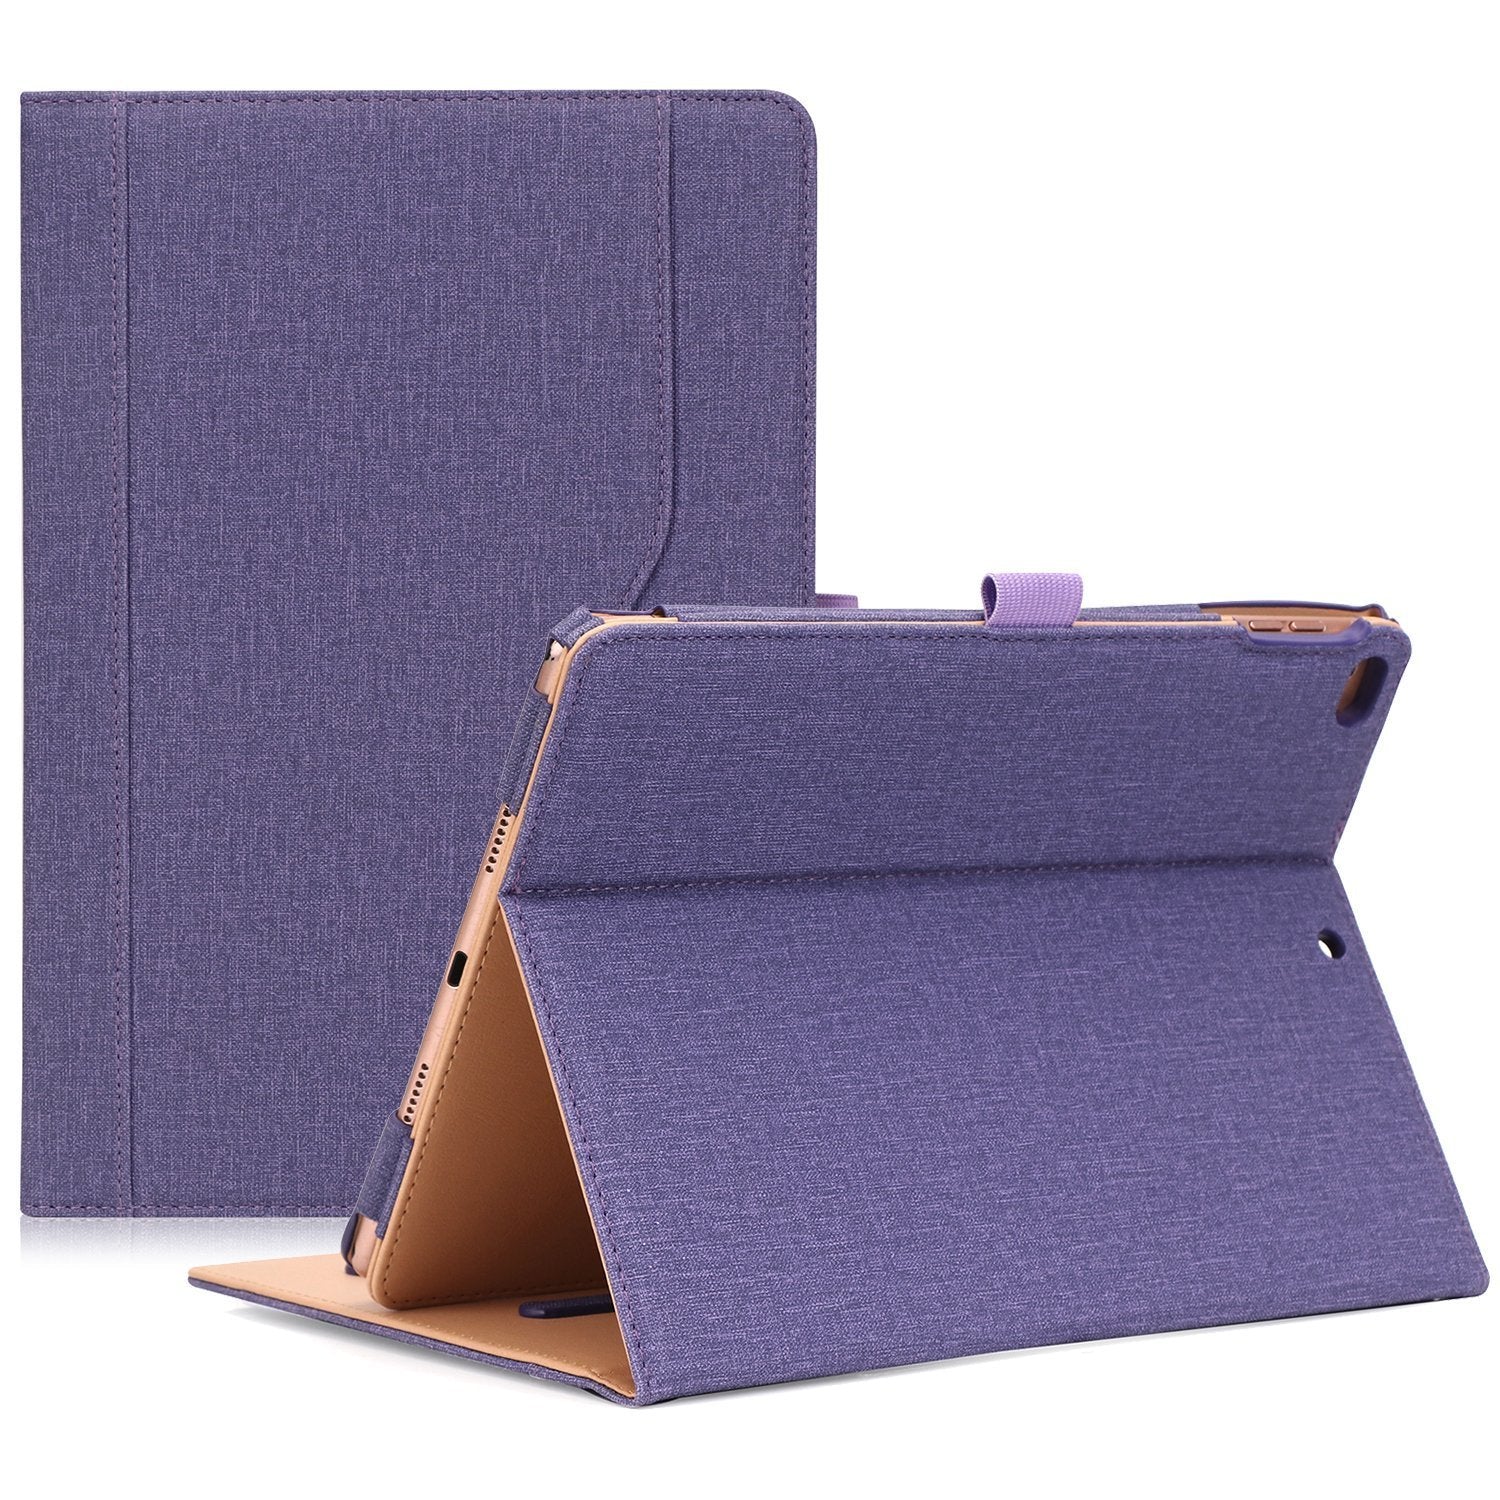 iPad 9.7 2018/2017 Leather Folio Case | ProCase purple